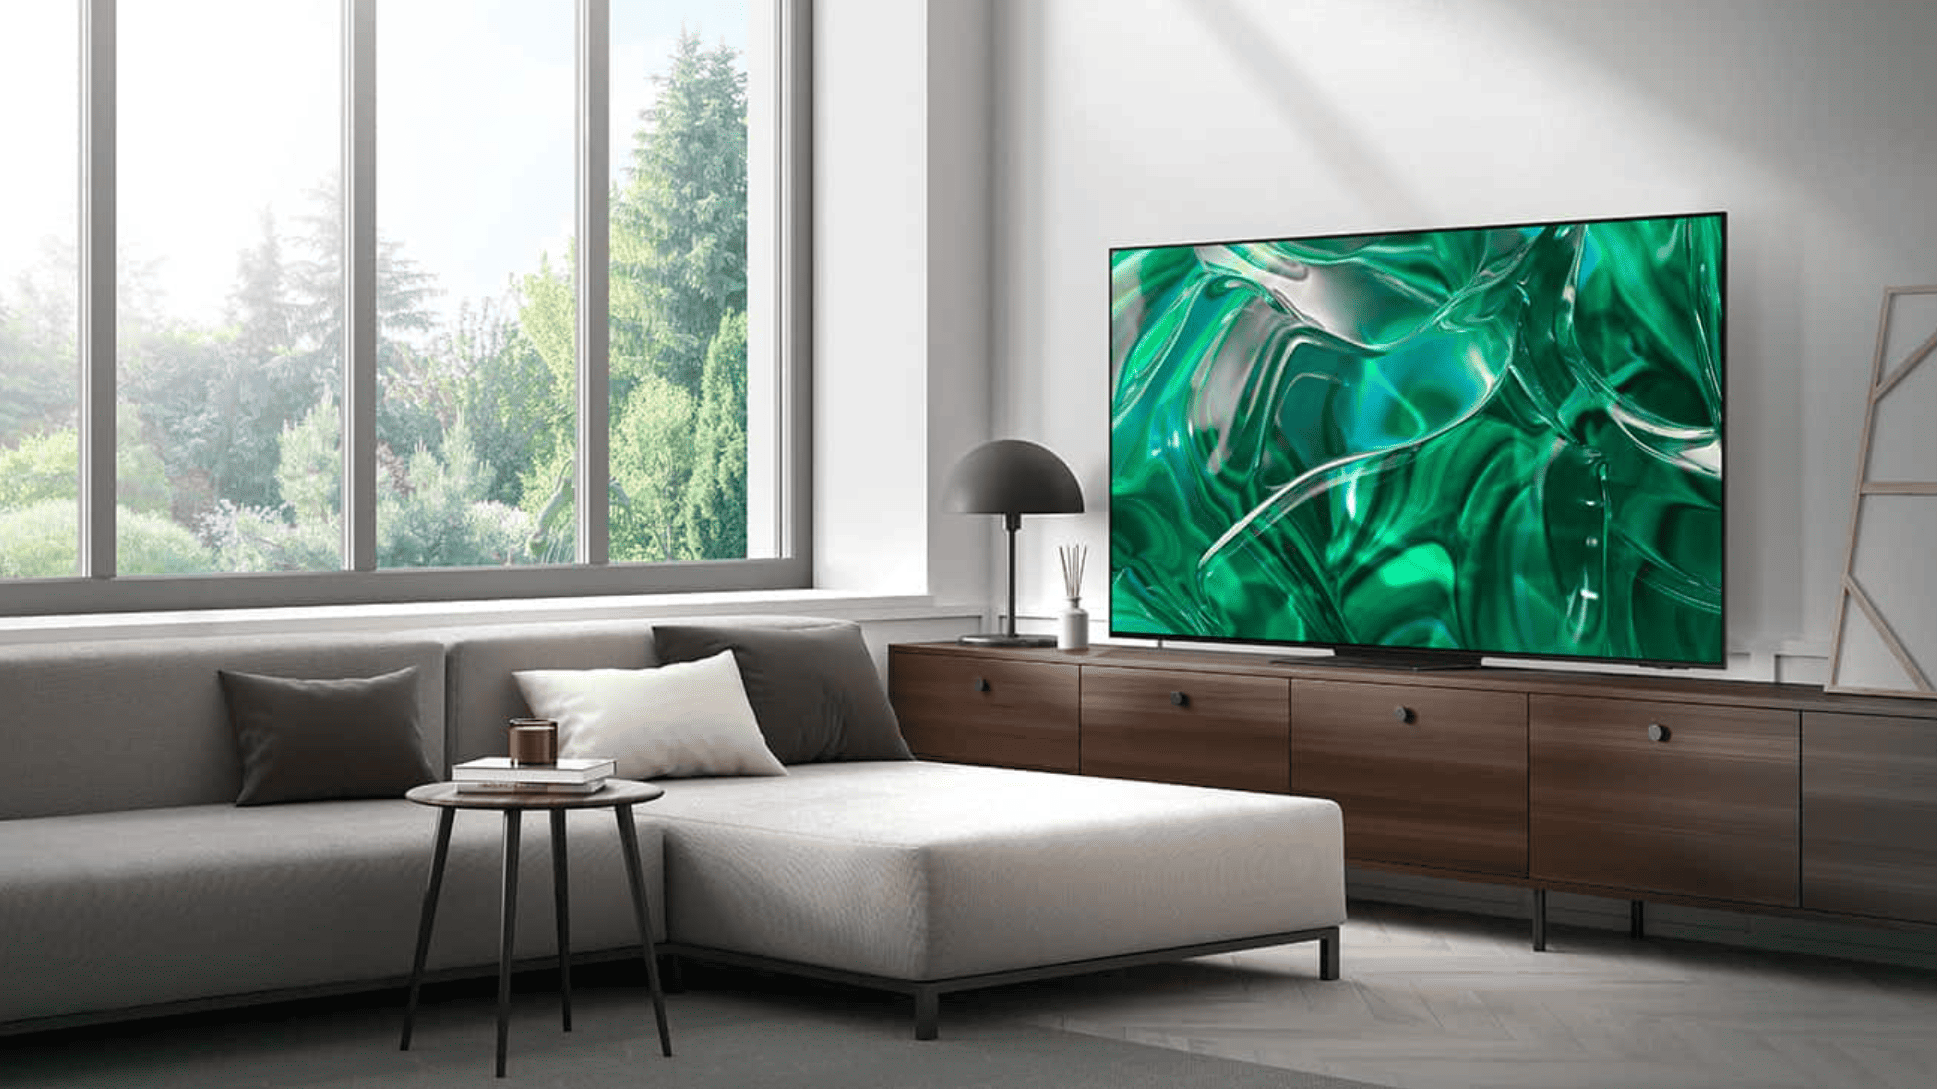 Este televisor Samsung OLED de 77 pulgadas cuesta $ 3500 por 19 horas más